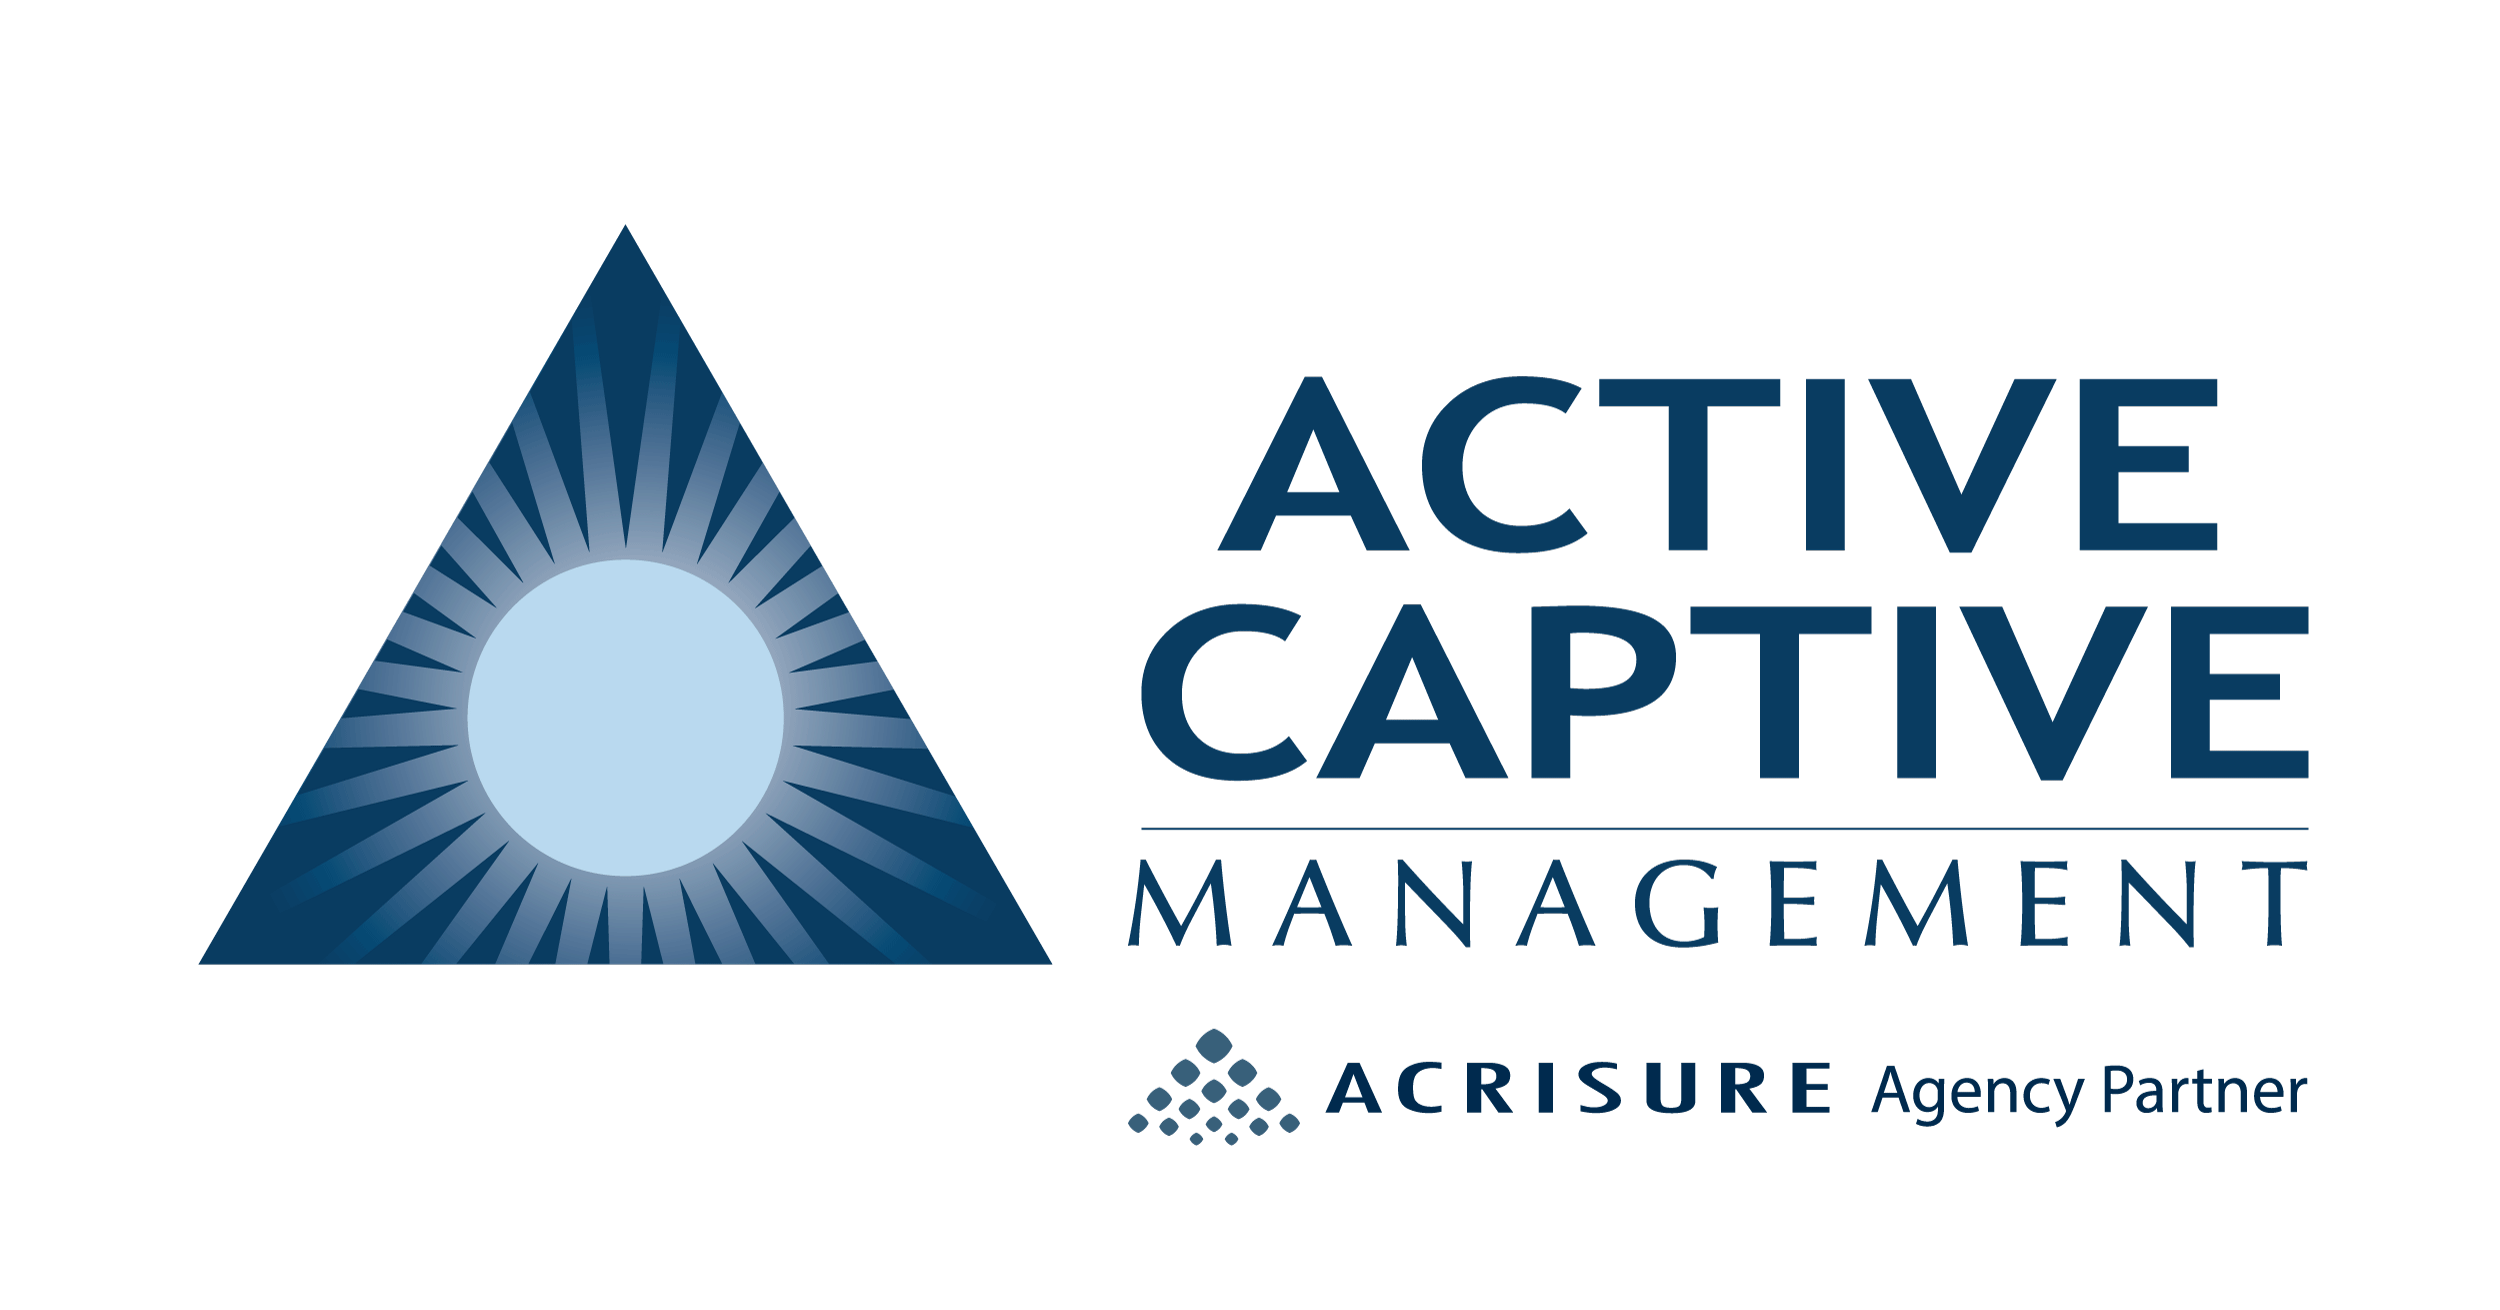 Active Captive Management